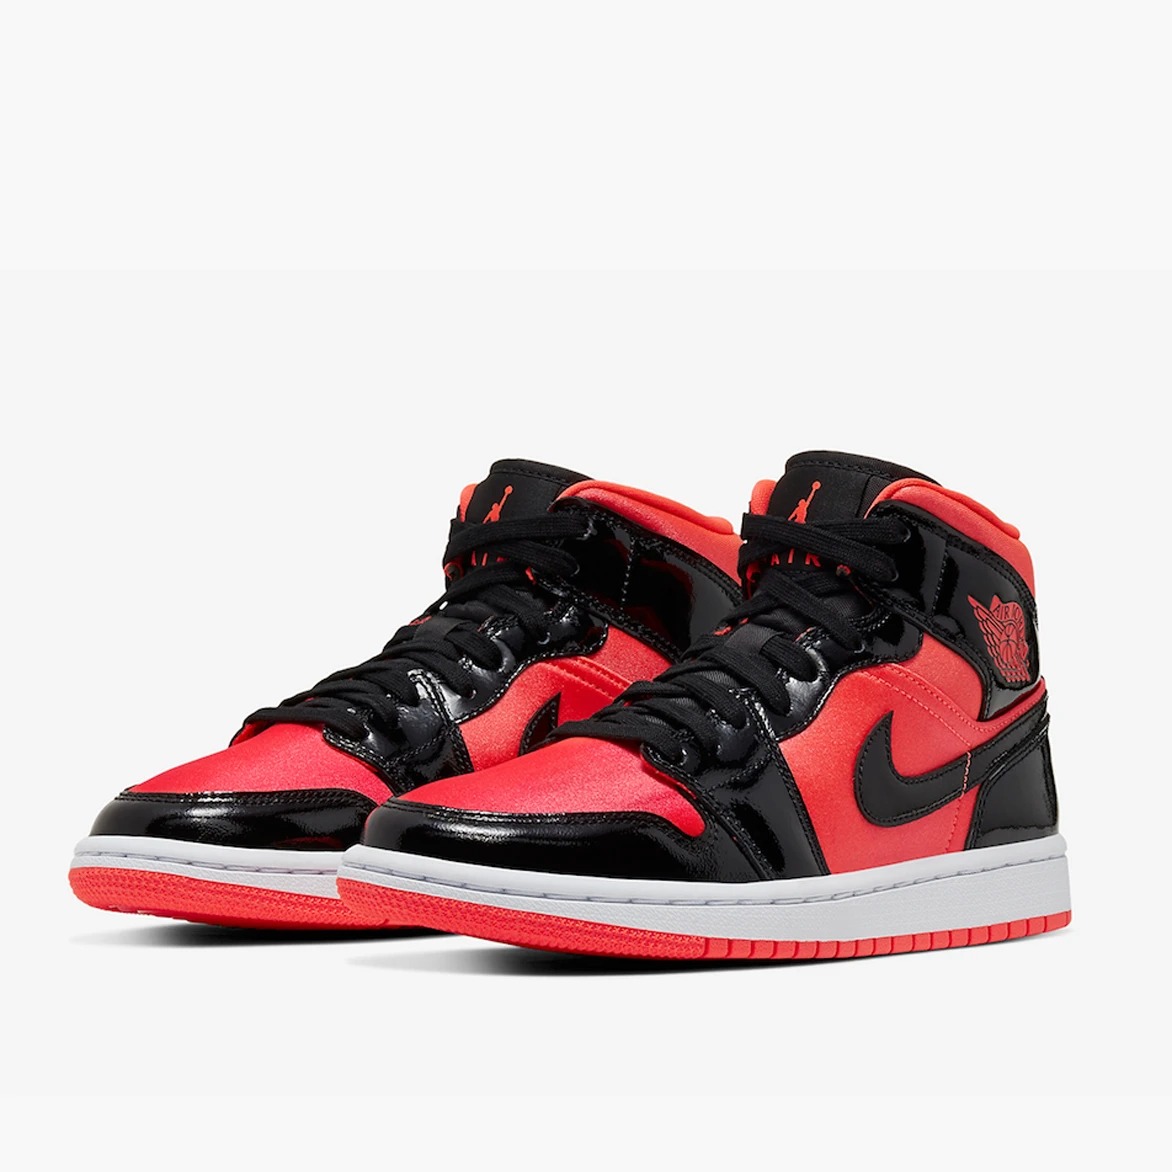 Джорданы 1 черные. Nike Air Jordan 1 Red. Nike Air Jordan 1 Black Red. Nike Air Jordan 1 Mid. Air Jordan 1 Mid Black Red.